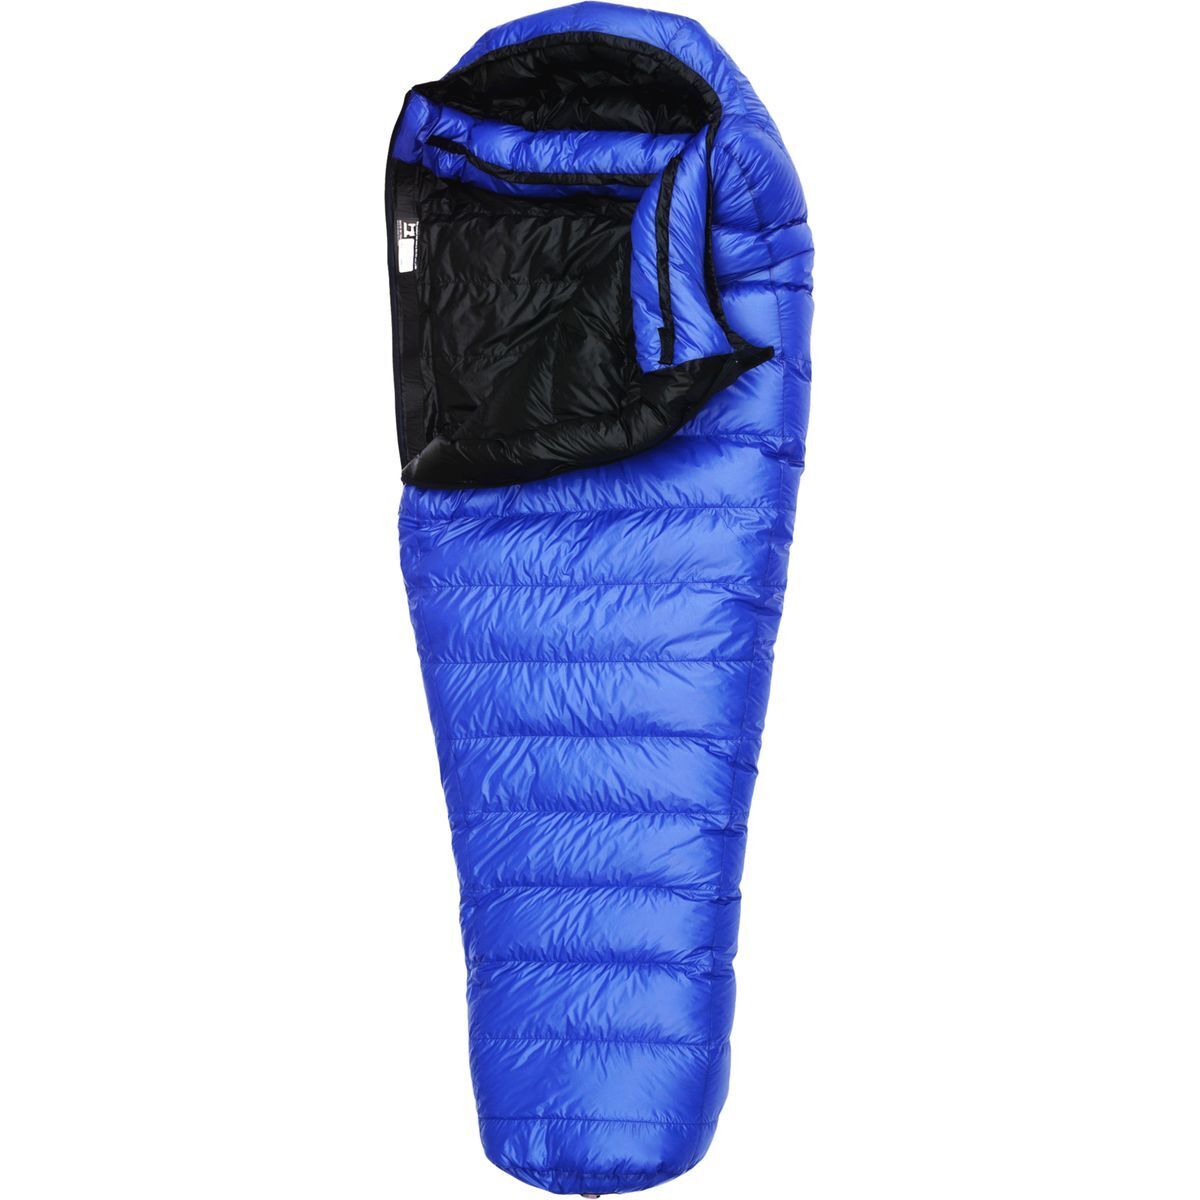 Western Mountaineering UltraLite Sleeping Bag: 20 Degree 